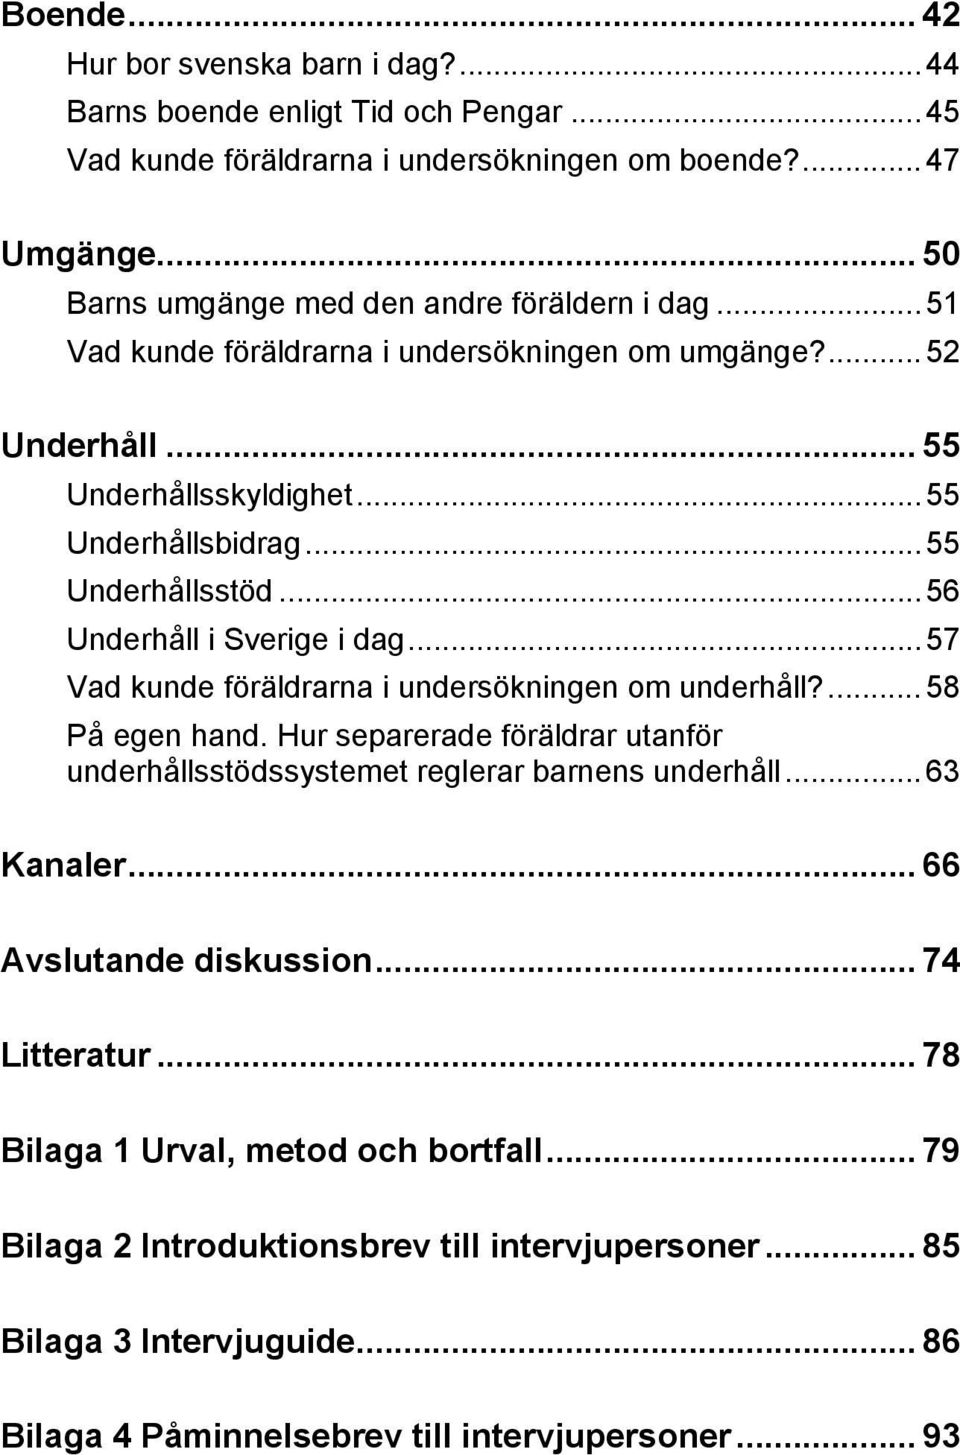 ..56 Underhåll i Sverige i dag...57 Vad kunde föräldrarna i undersökningen om underhåll?...58 På egen hand. Hur separerade föräldrar utanför underhållsstödssystemet reglerar barnens underhåll.